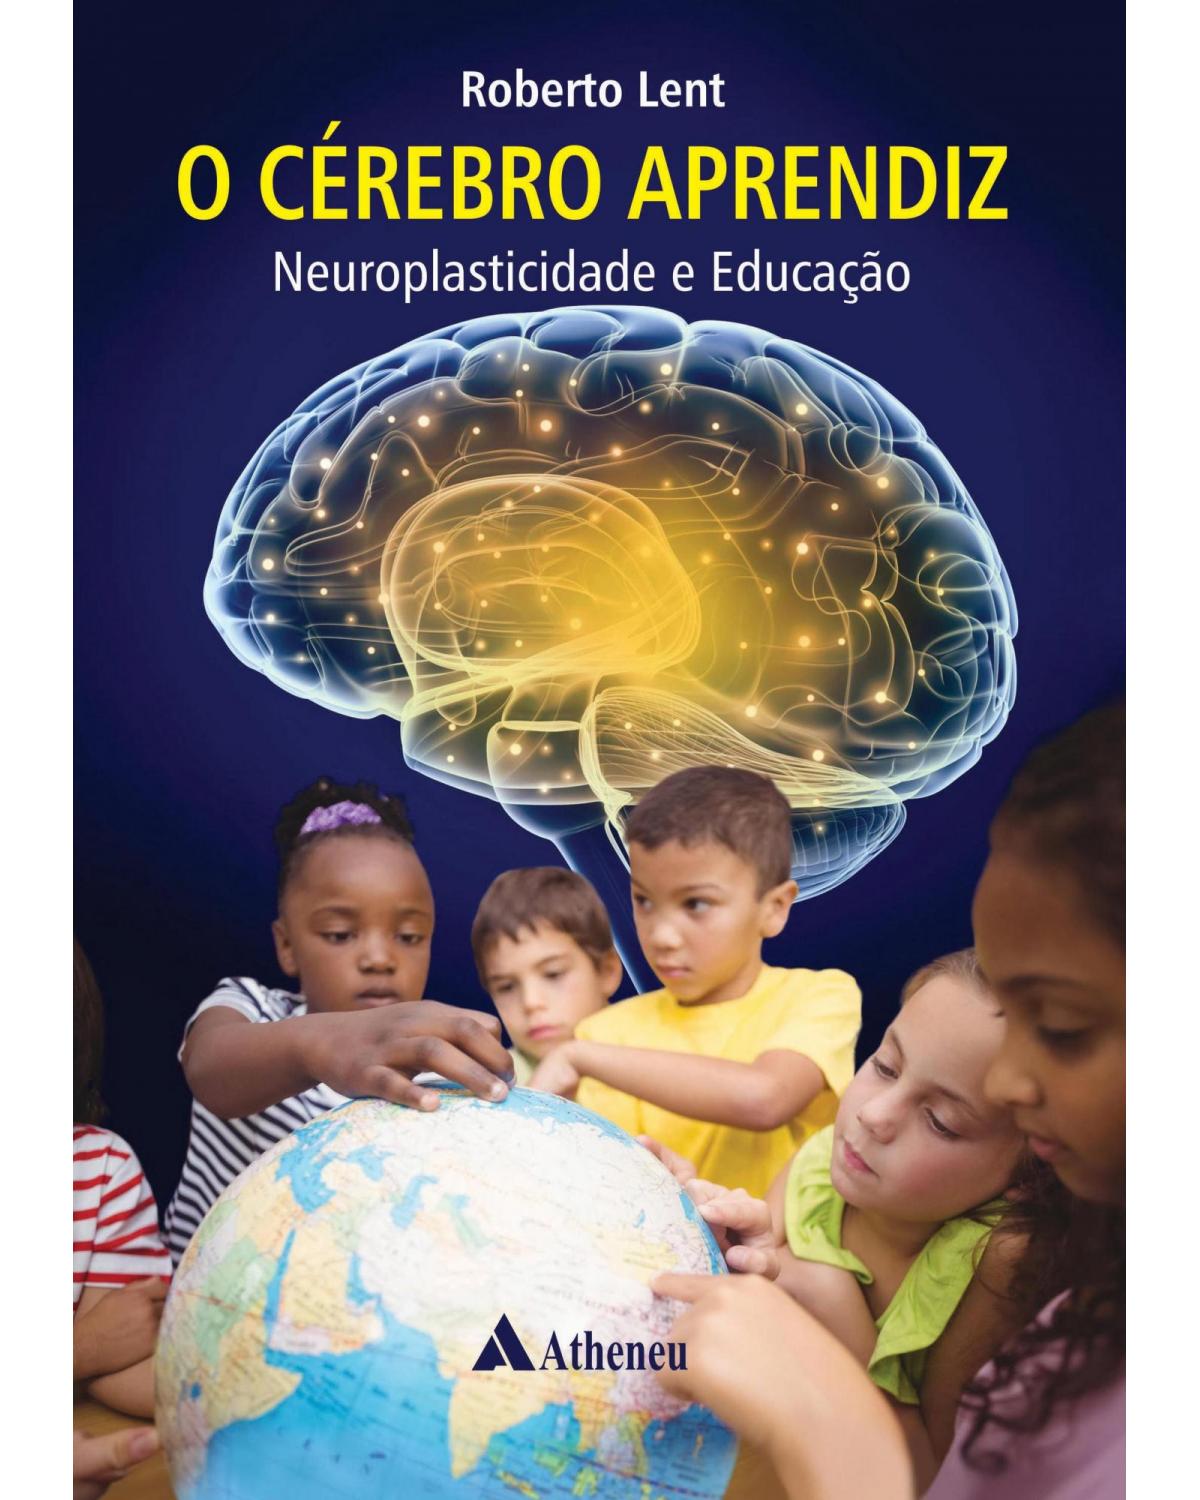 O cérebro aprendiz - neuroplasticidade e educação - 1ª Edição | 2018